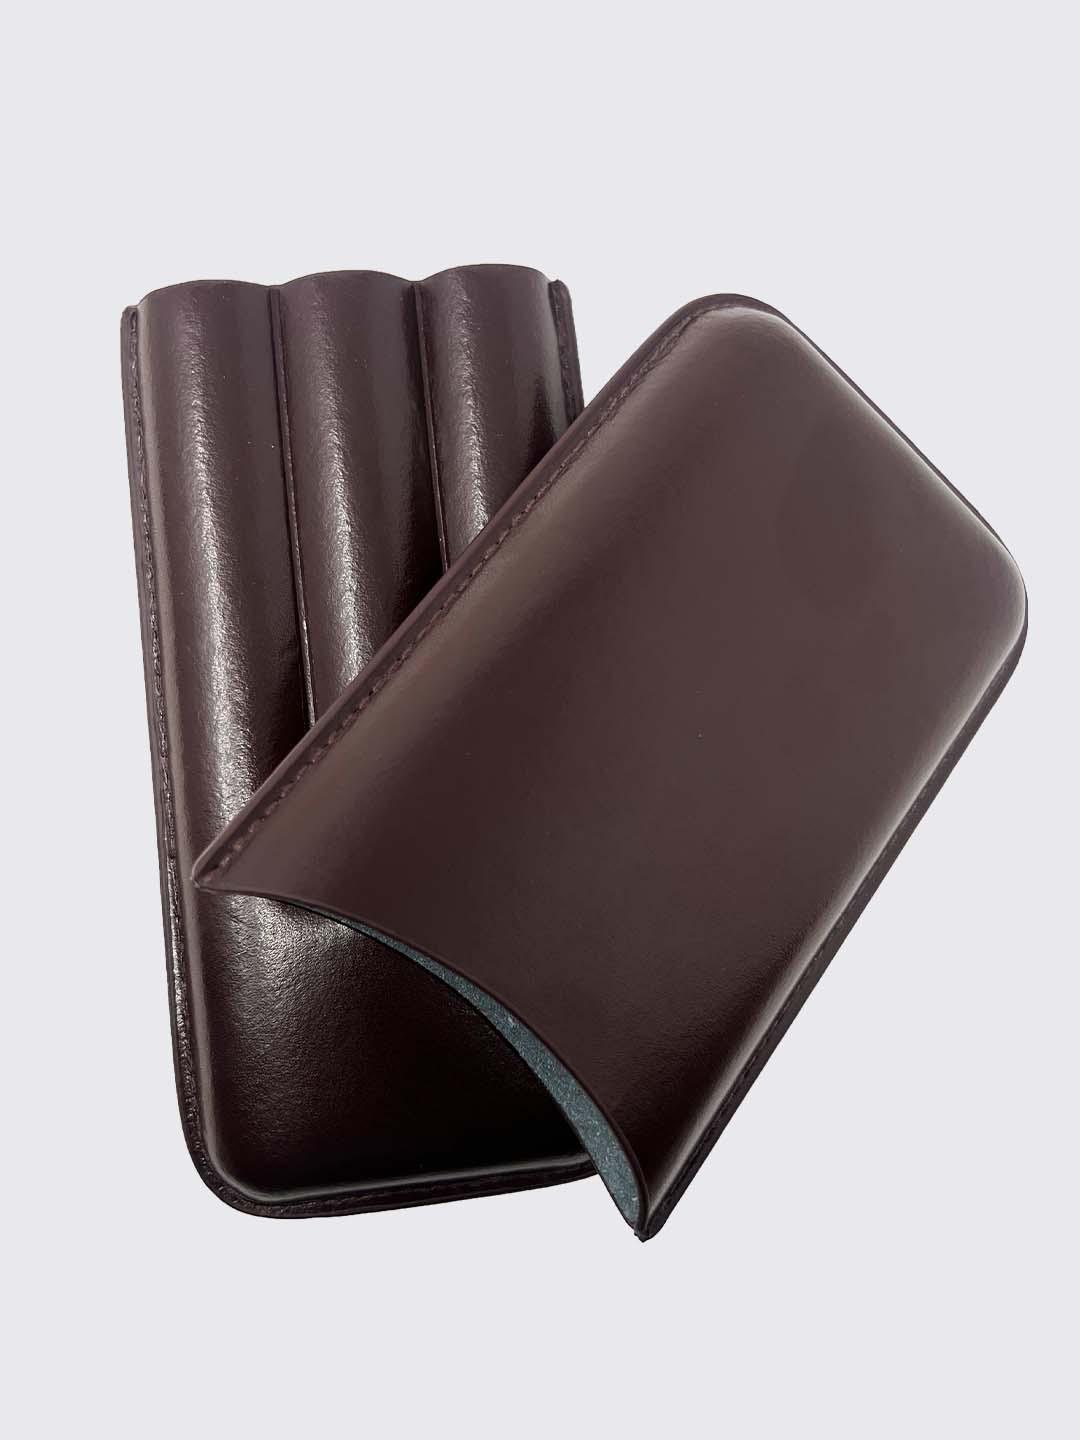 Oliva Premium Leather 3 Cigar Travel Case